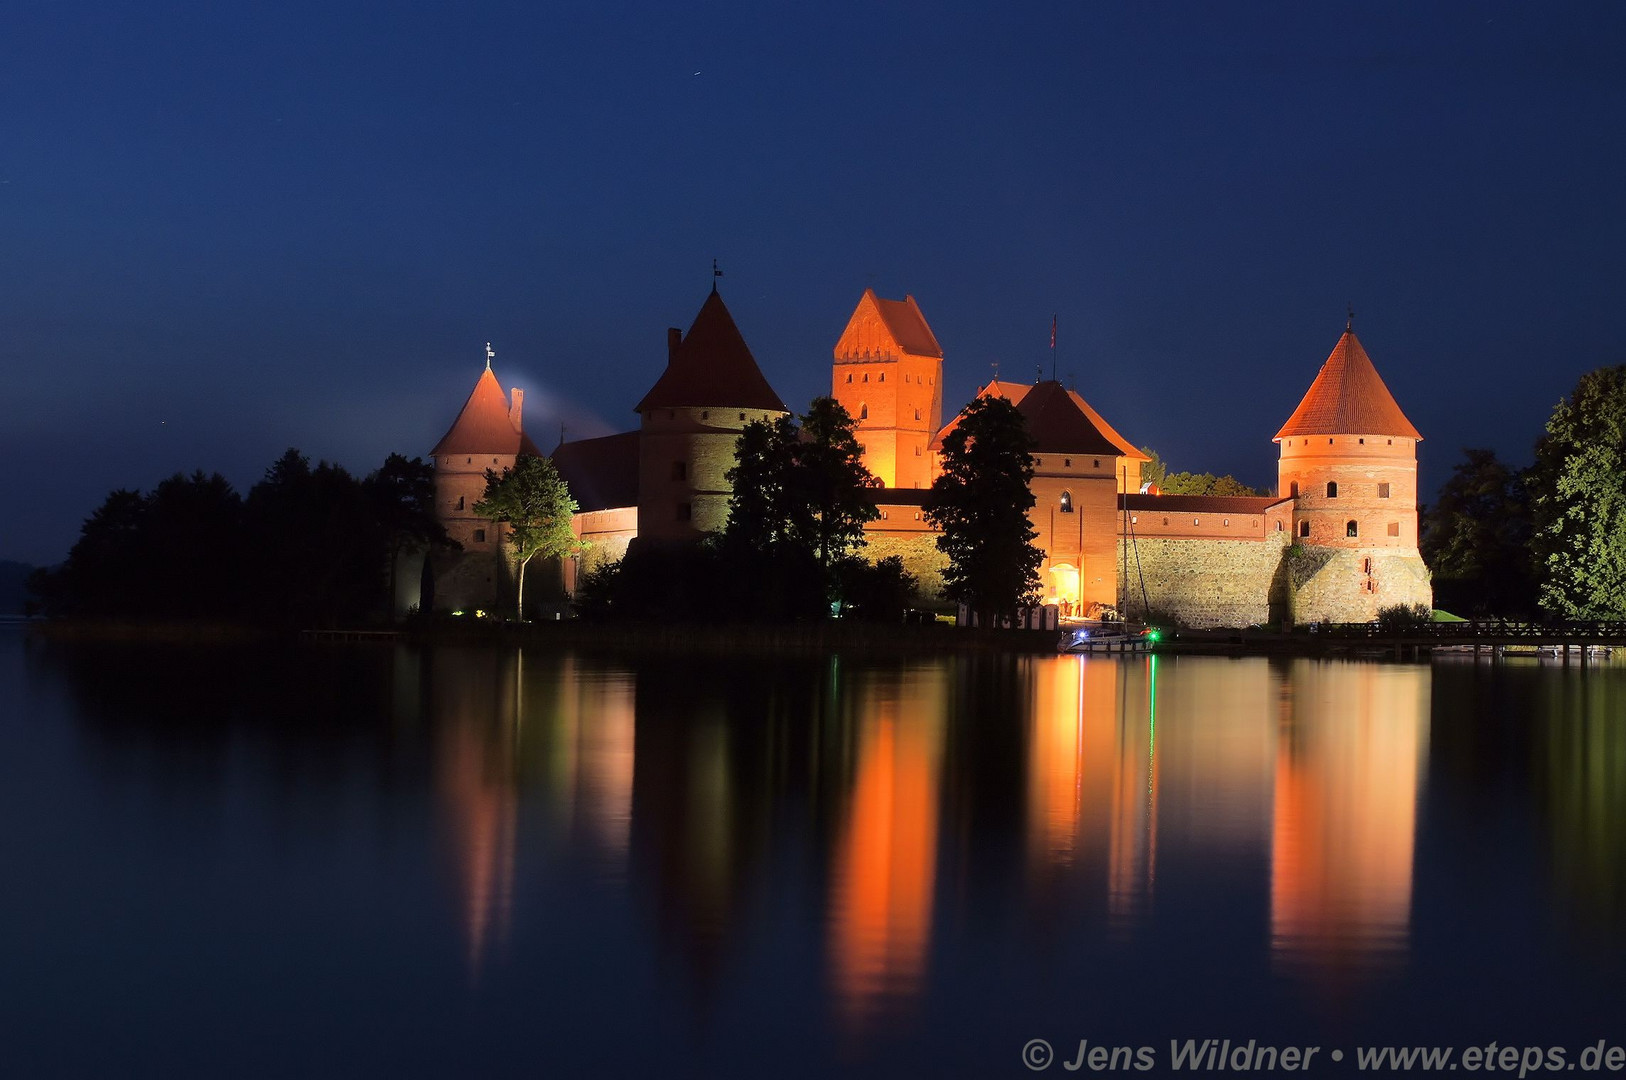 Burg von Trakai